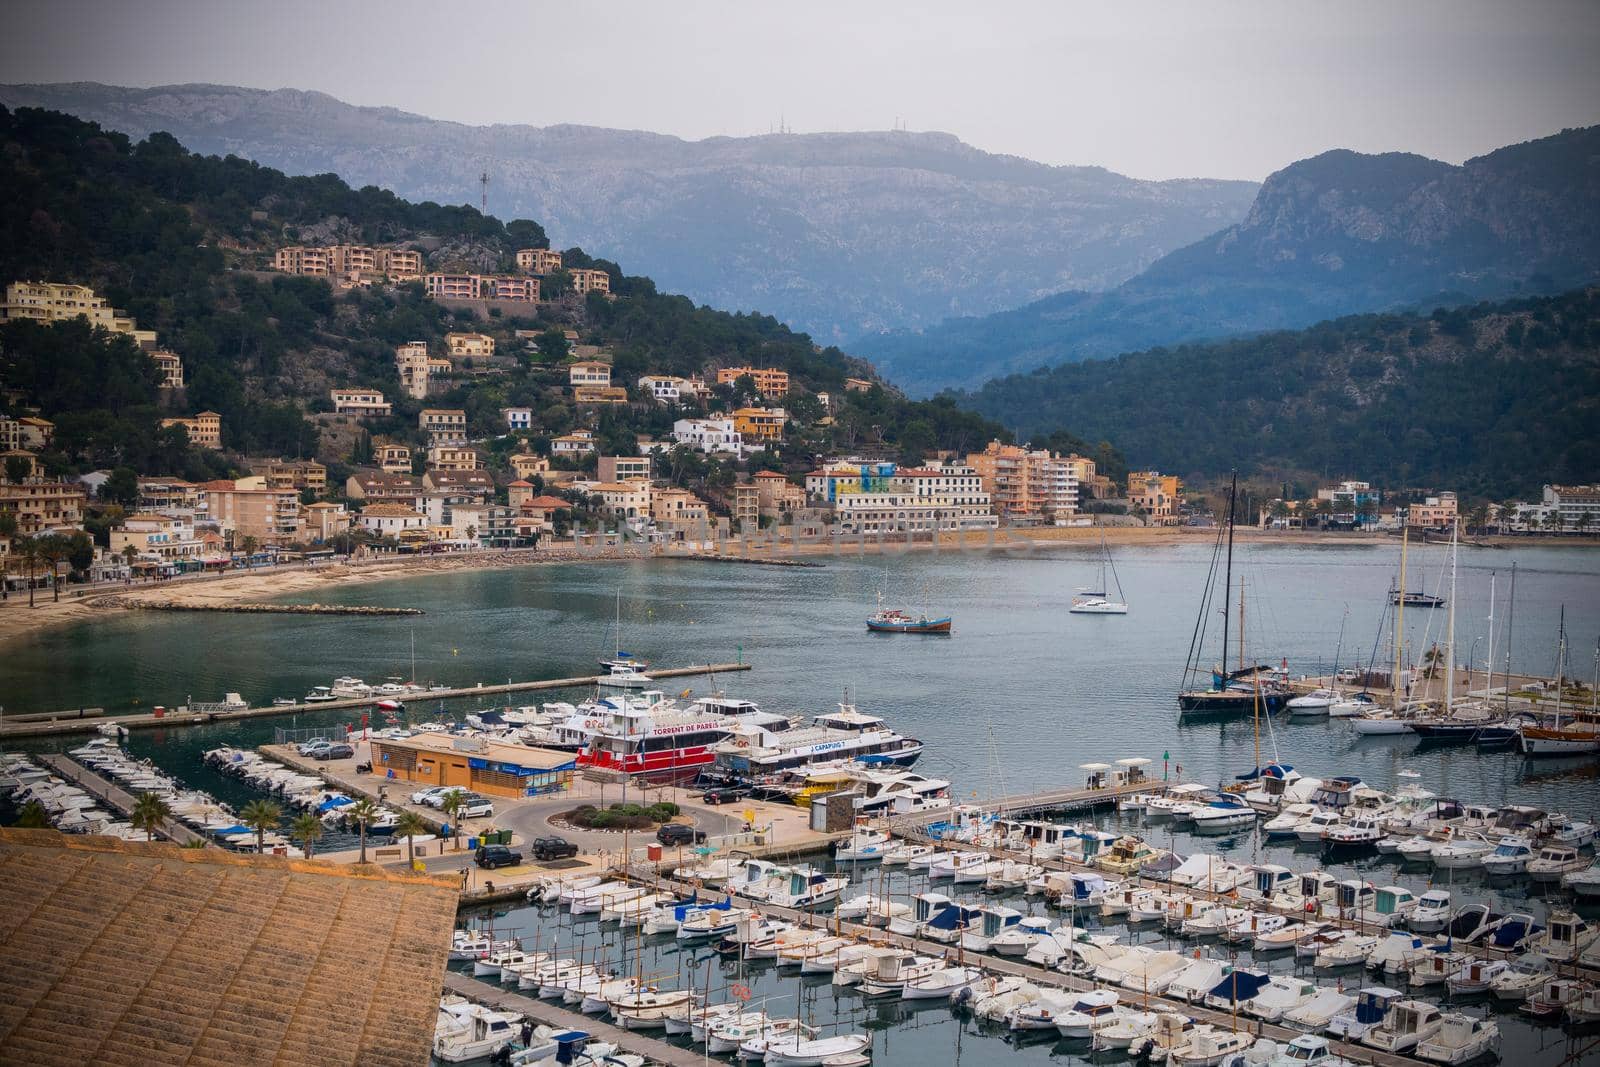 Port de Soller in february, Majorca by bildgigant